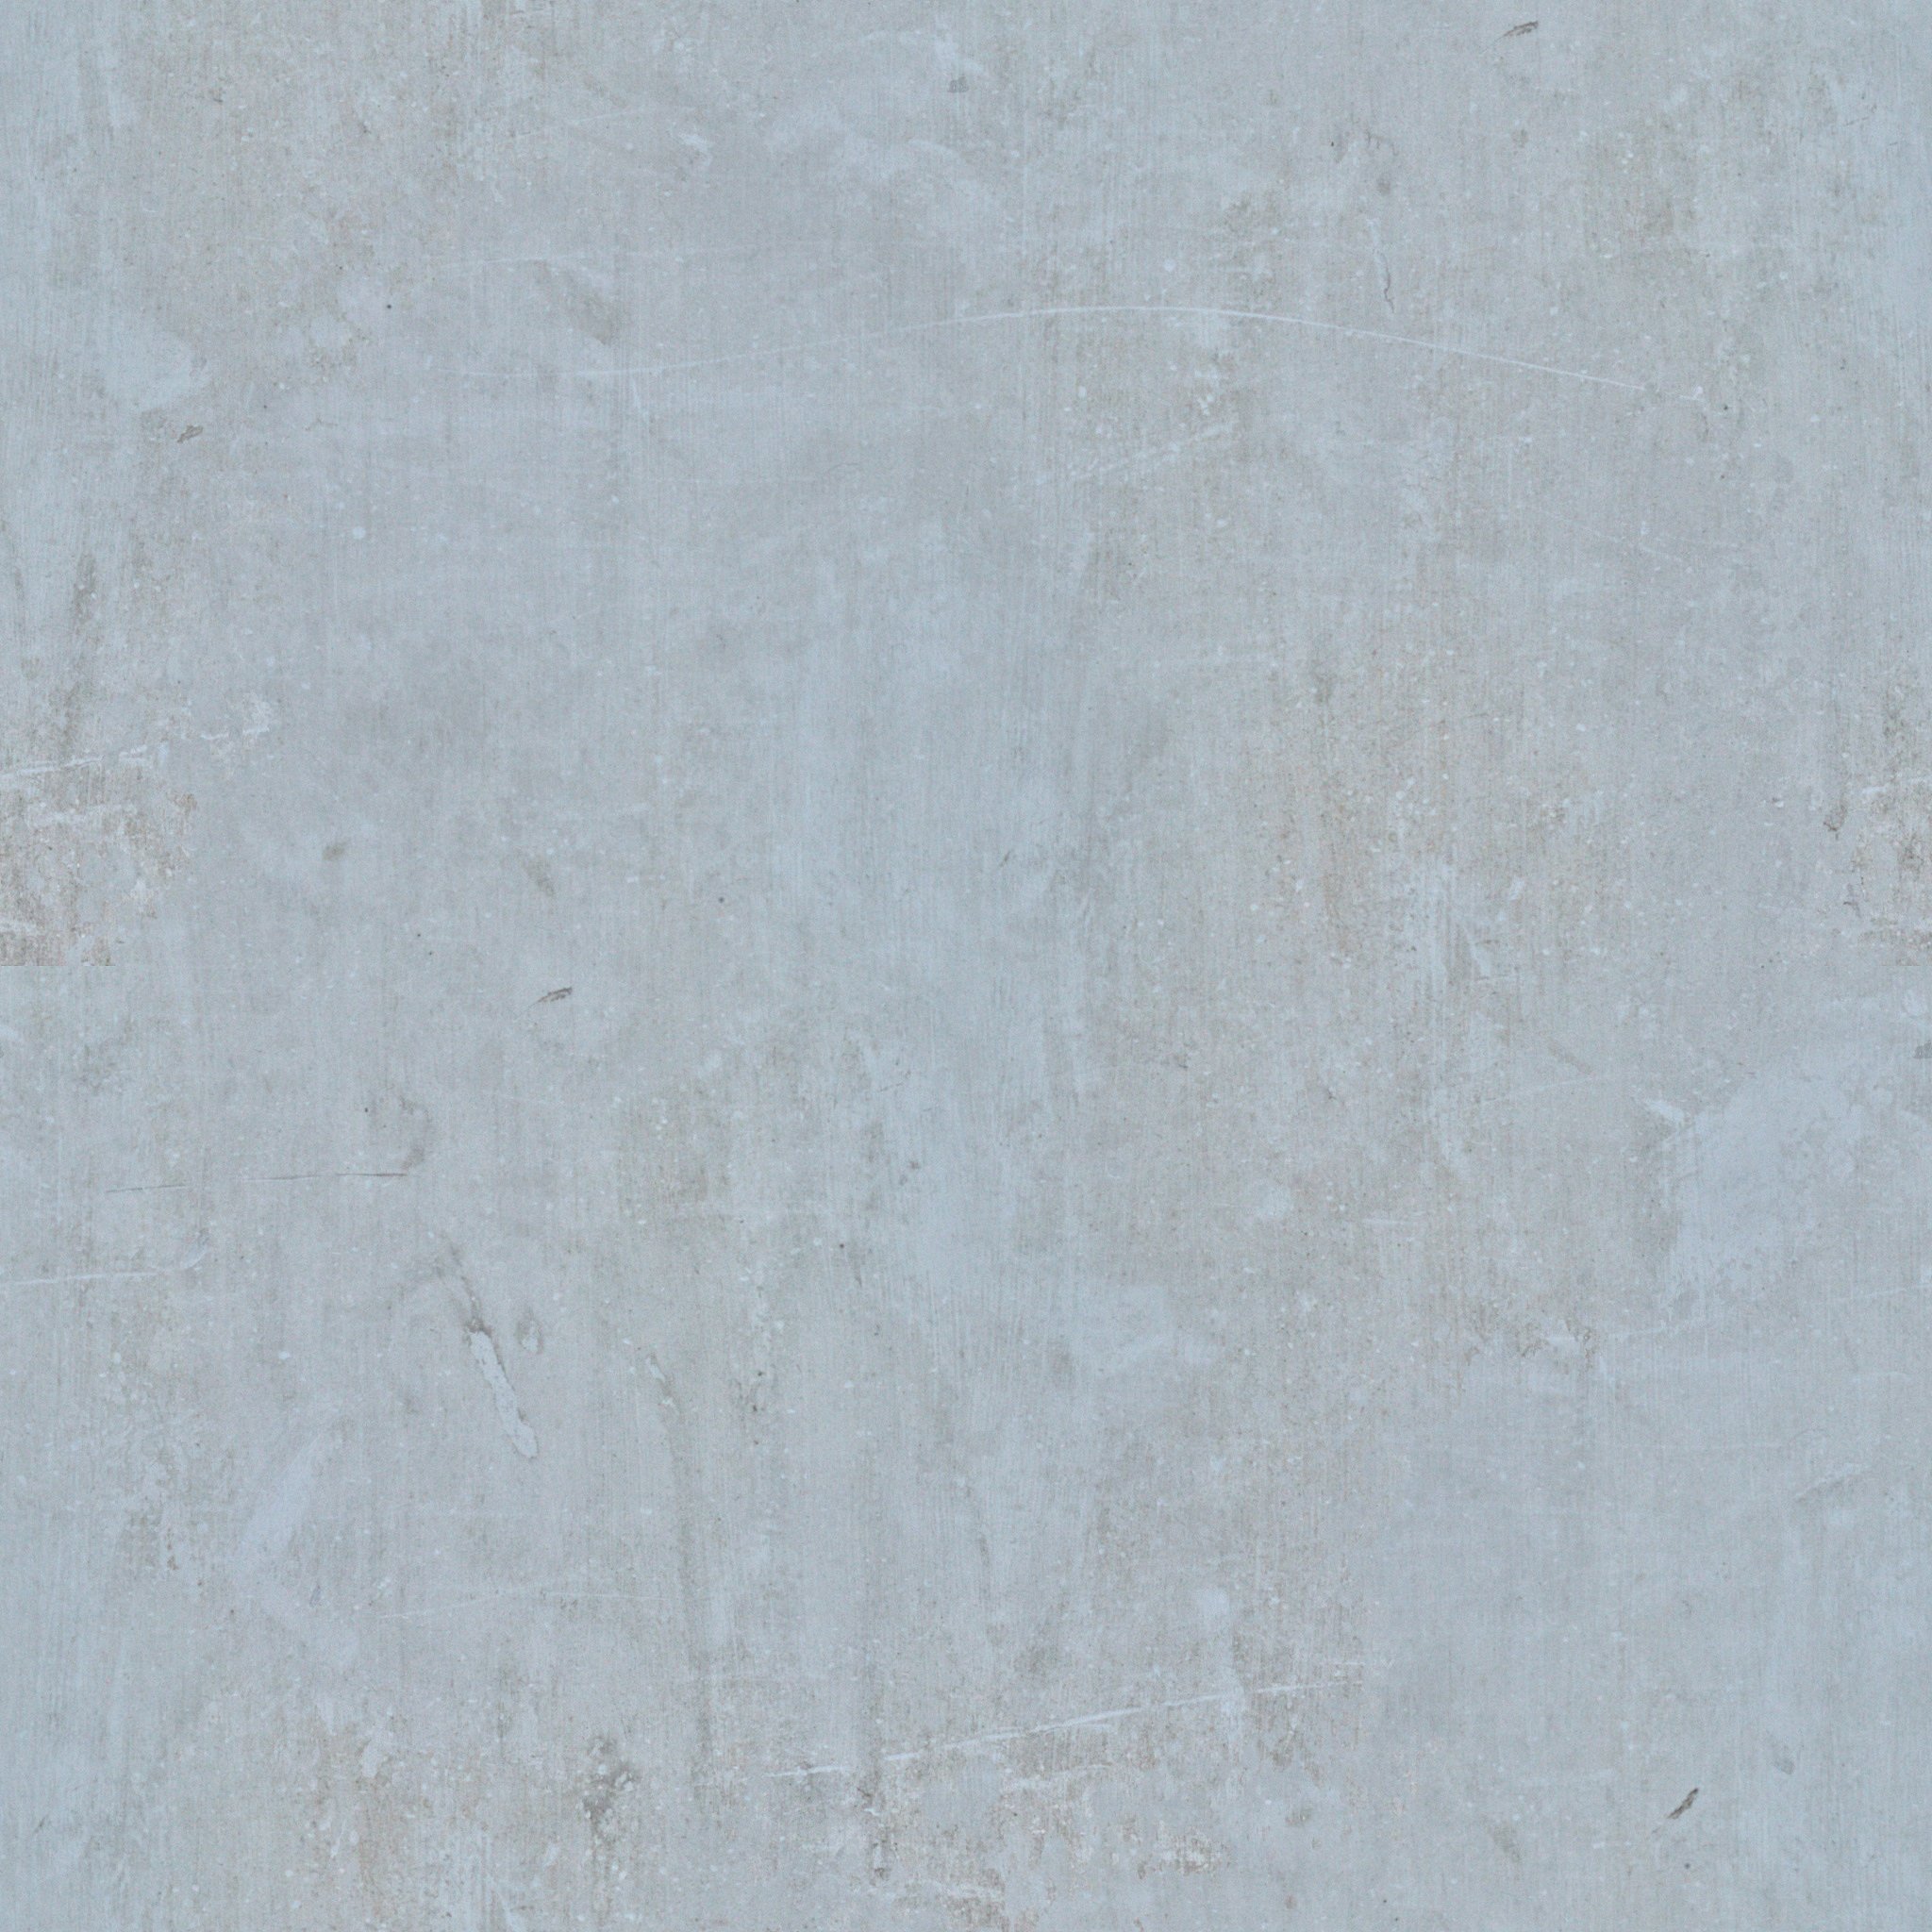 Concrete Texture Tileable 2048x2048 ~ Textures ~ Creative Market